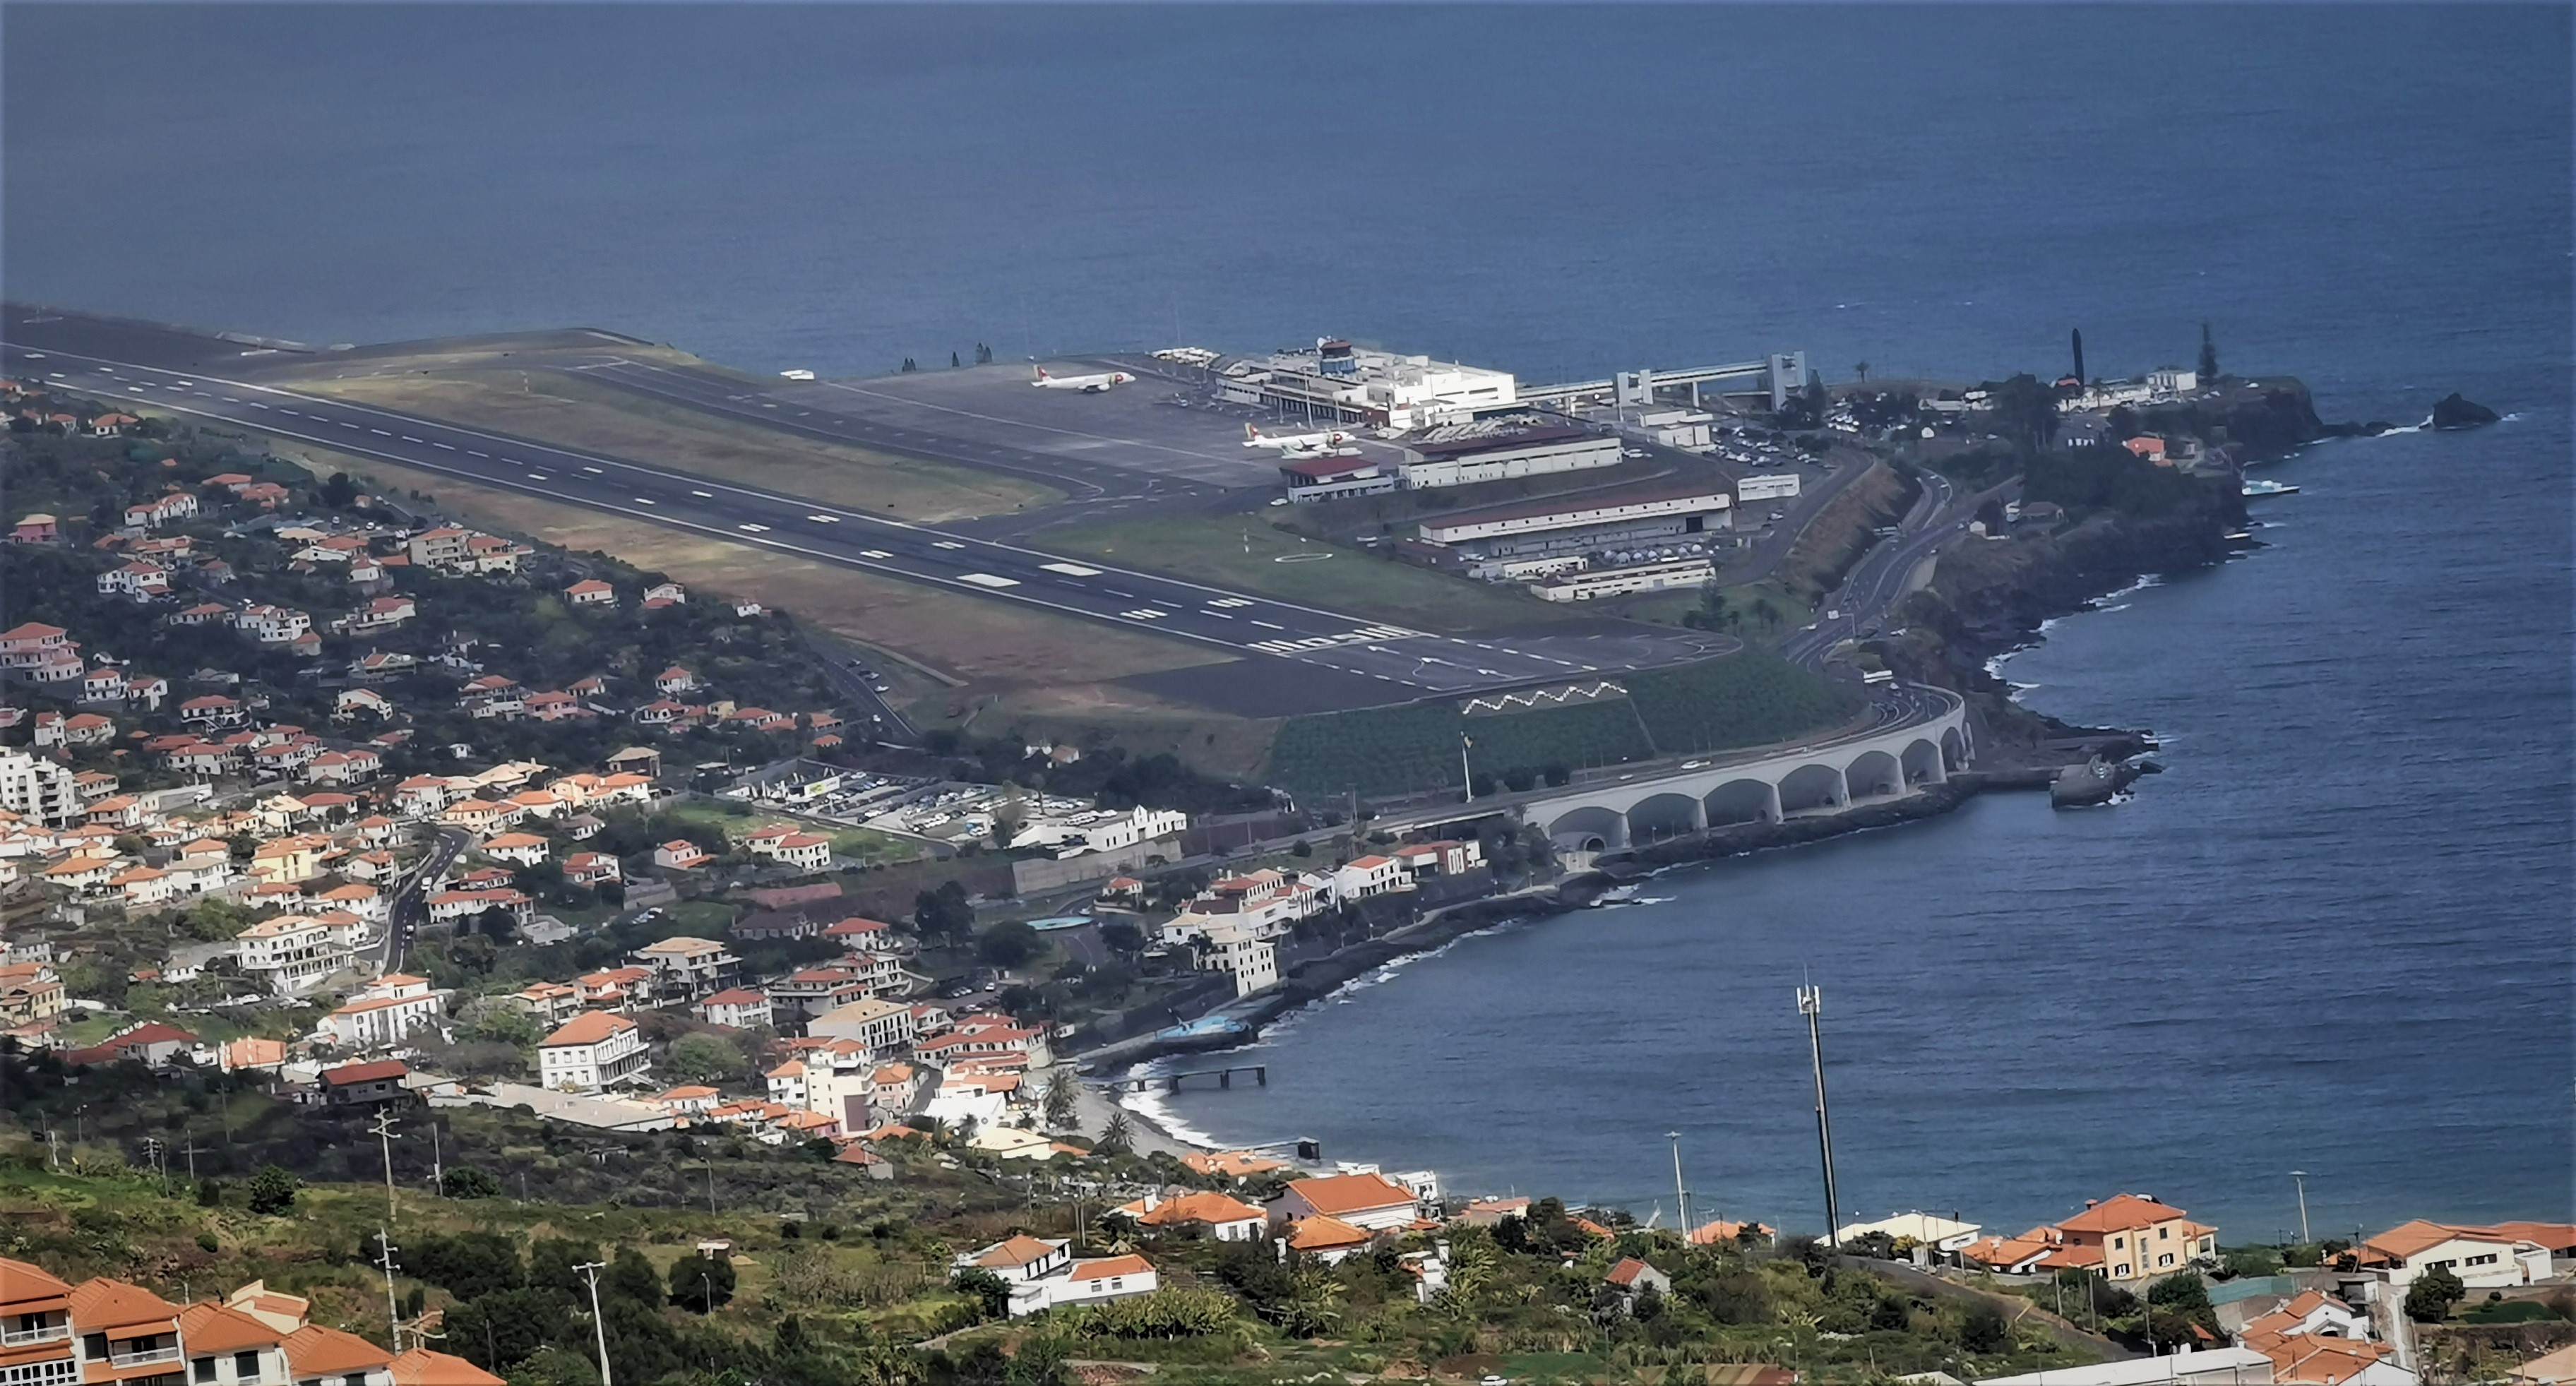 Aeroportul Cristiano Ronaldo - Madeira, Portugalia